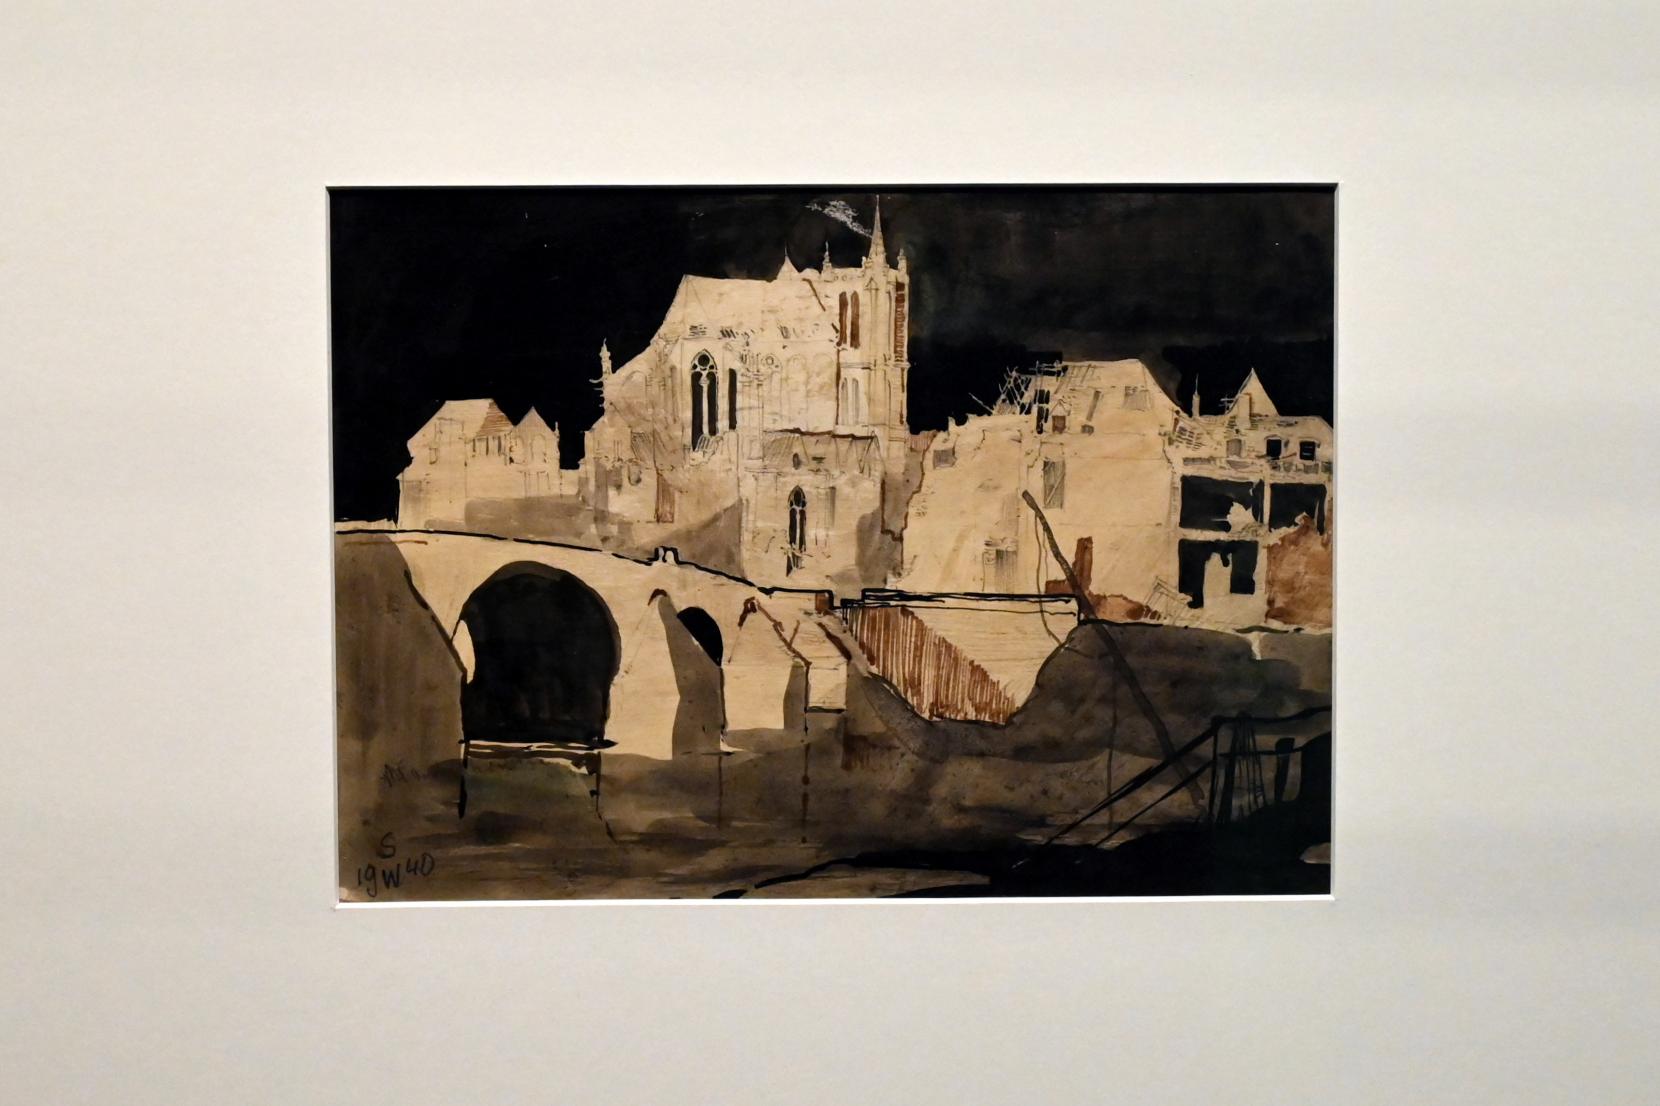 Willi Sitte (1938–2002), Landschaft in Frankreich, Halle (Saale), Kunstmuseum Moritzburg, Ausstellung "Sittes Welt" vom 03.10.2021 - 06.02.2022, Saal 2, 1940, Bild 1/2